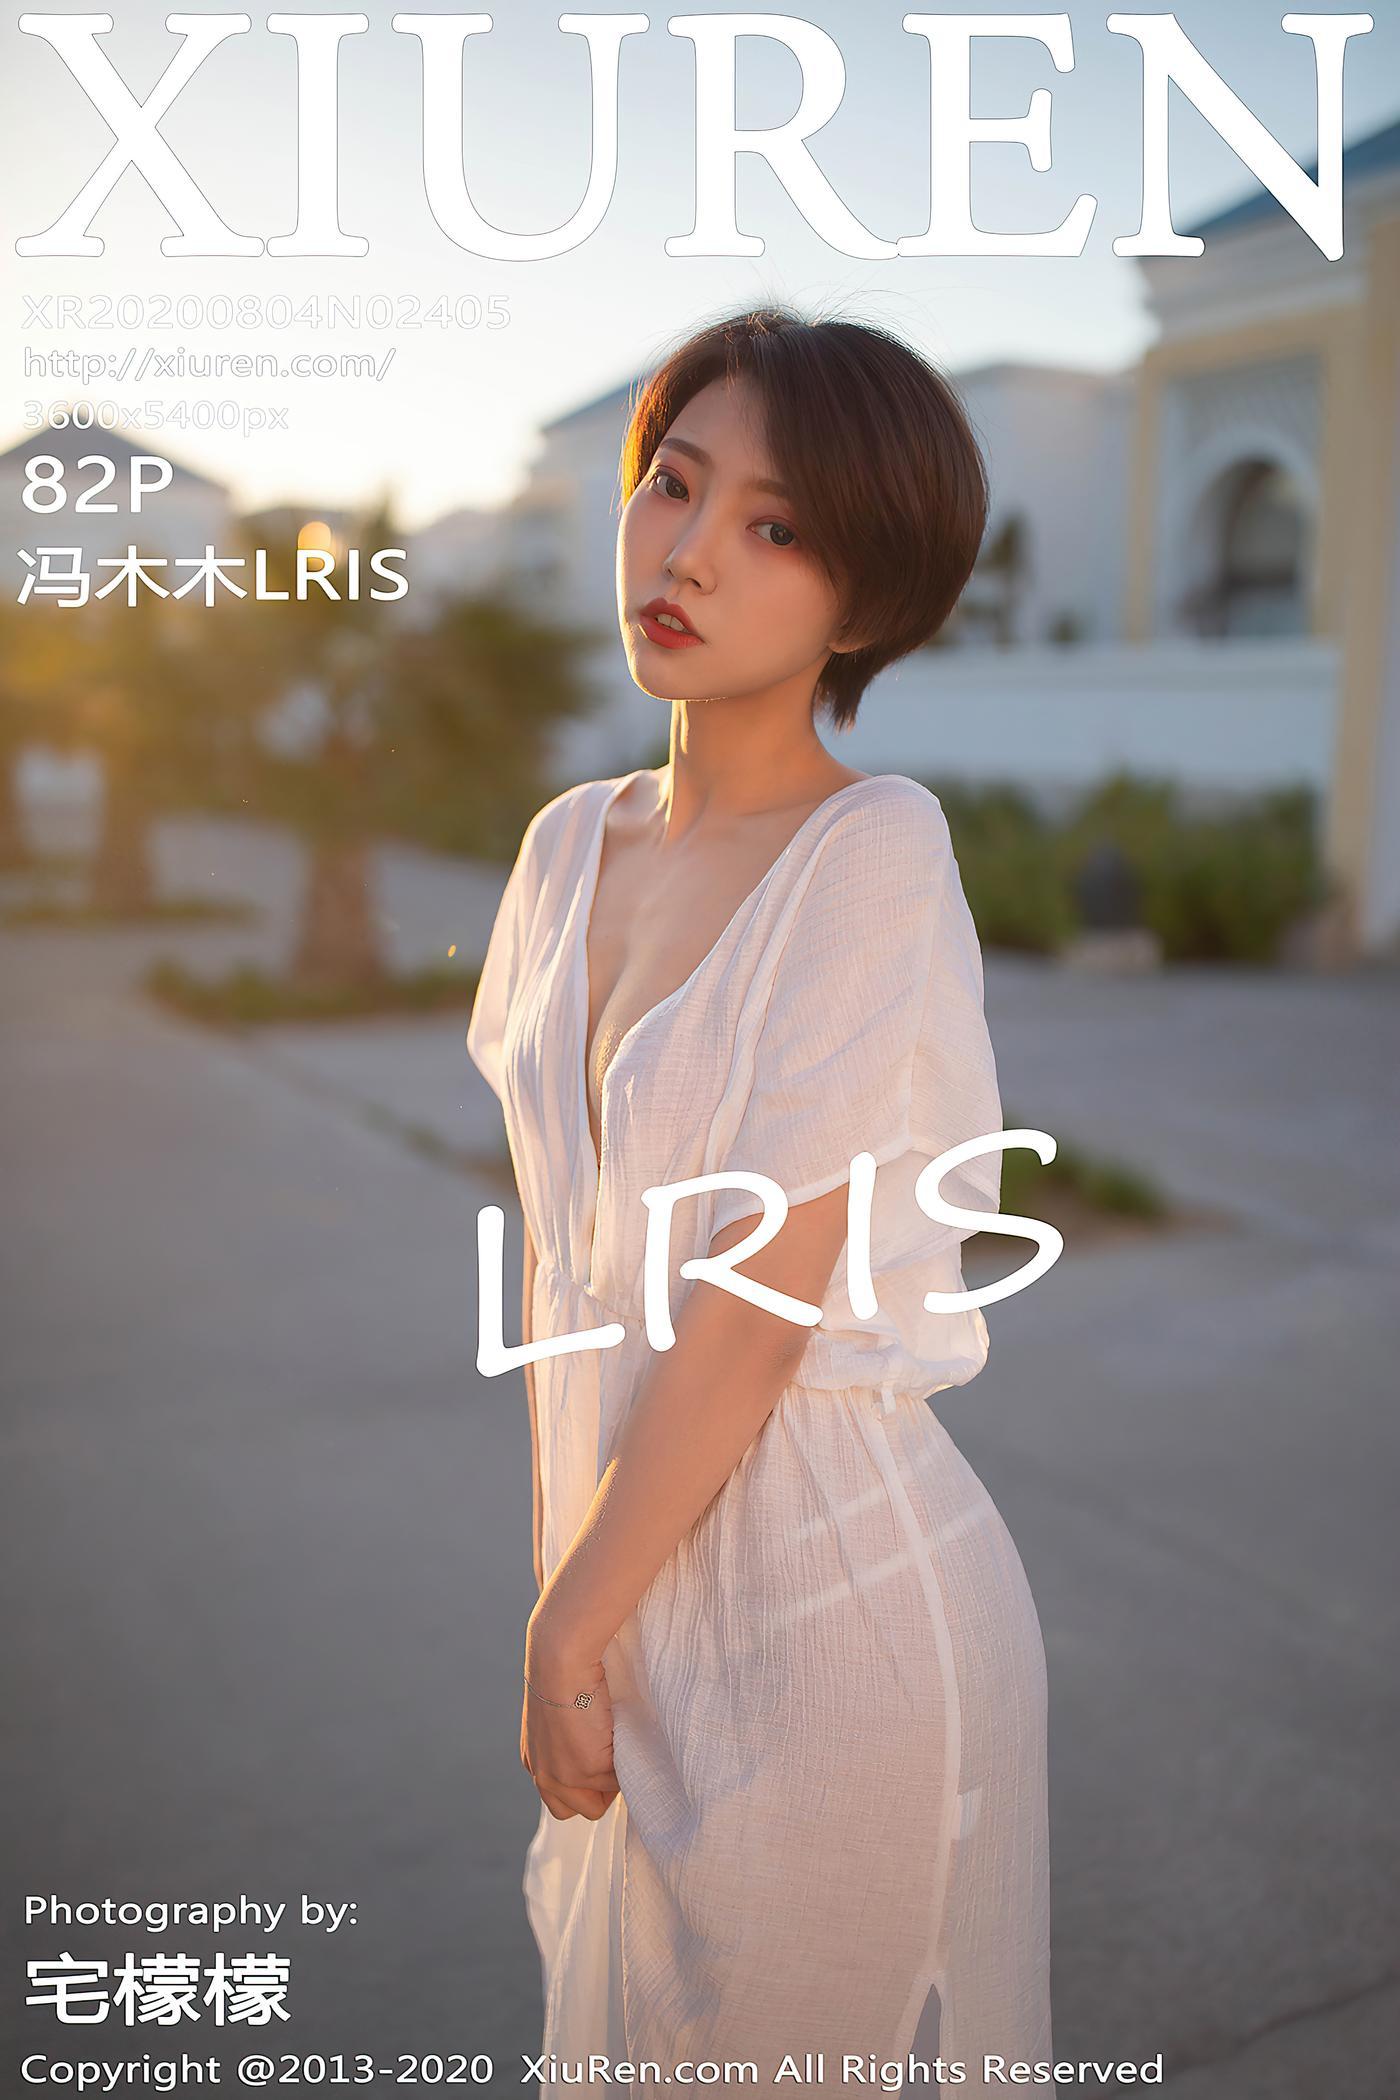 冯木木LRIS - [XIUREN秀人网] 2020.08.04 No.2405 [83P] - 图屋屋